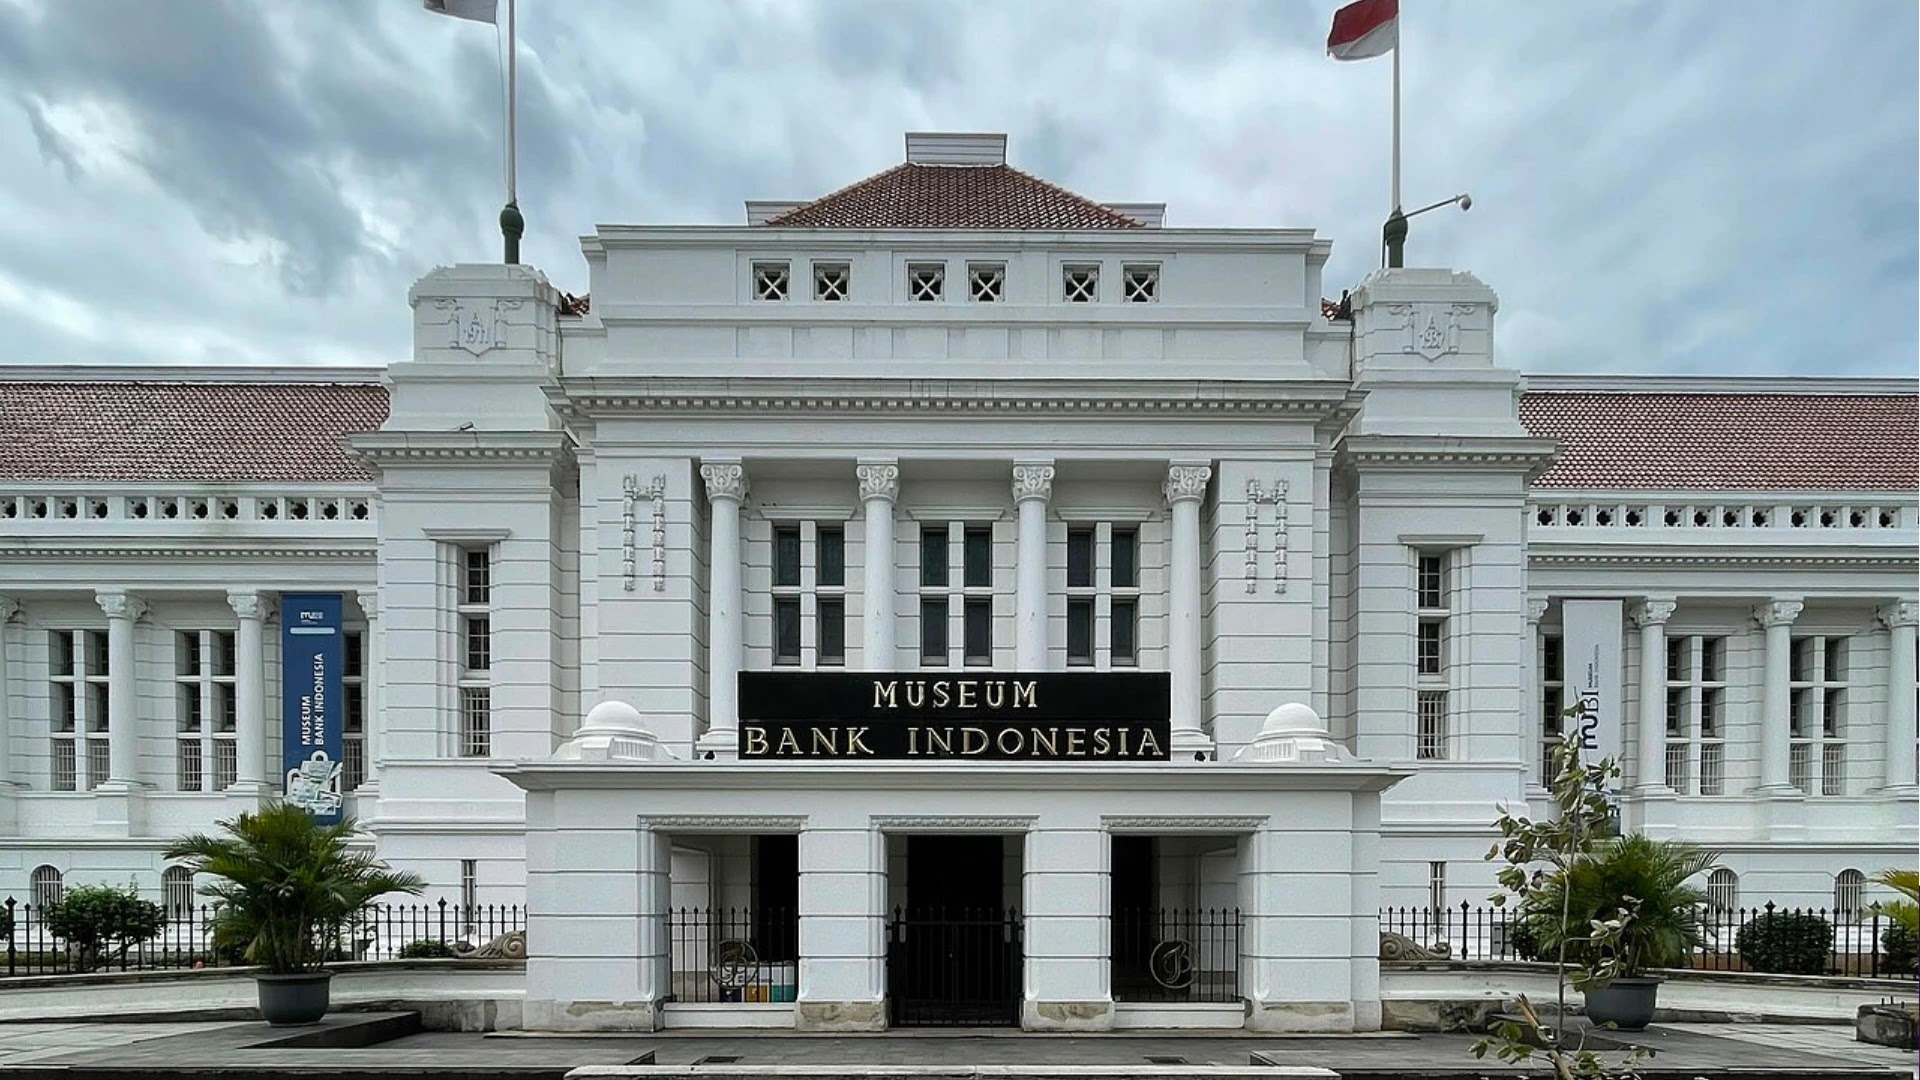 Museum Bank Indonesia, Wisata Sejarah dan Edukasi di Gedung Bersejarah di Kota Tua Jakarta